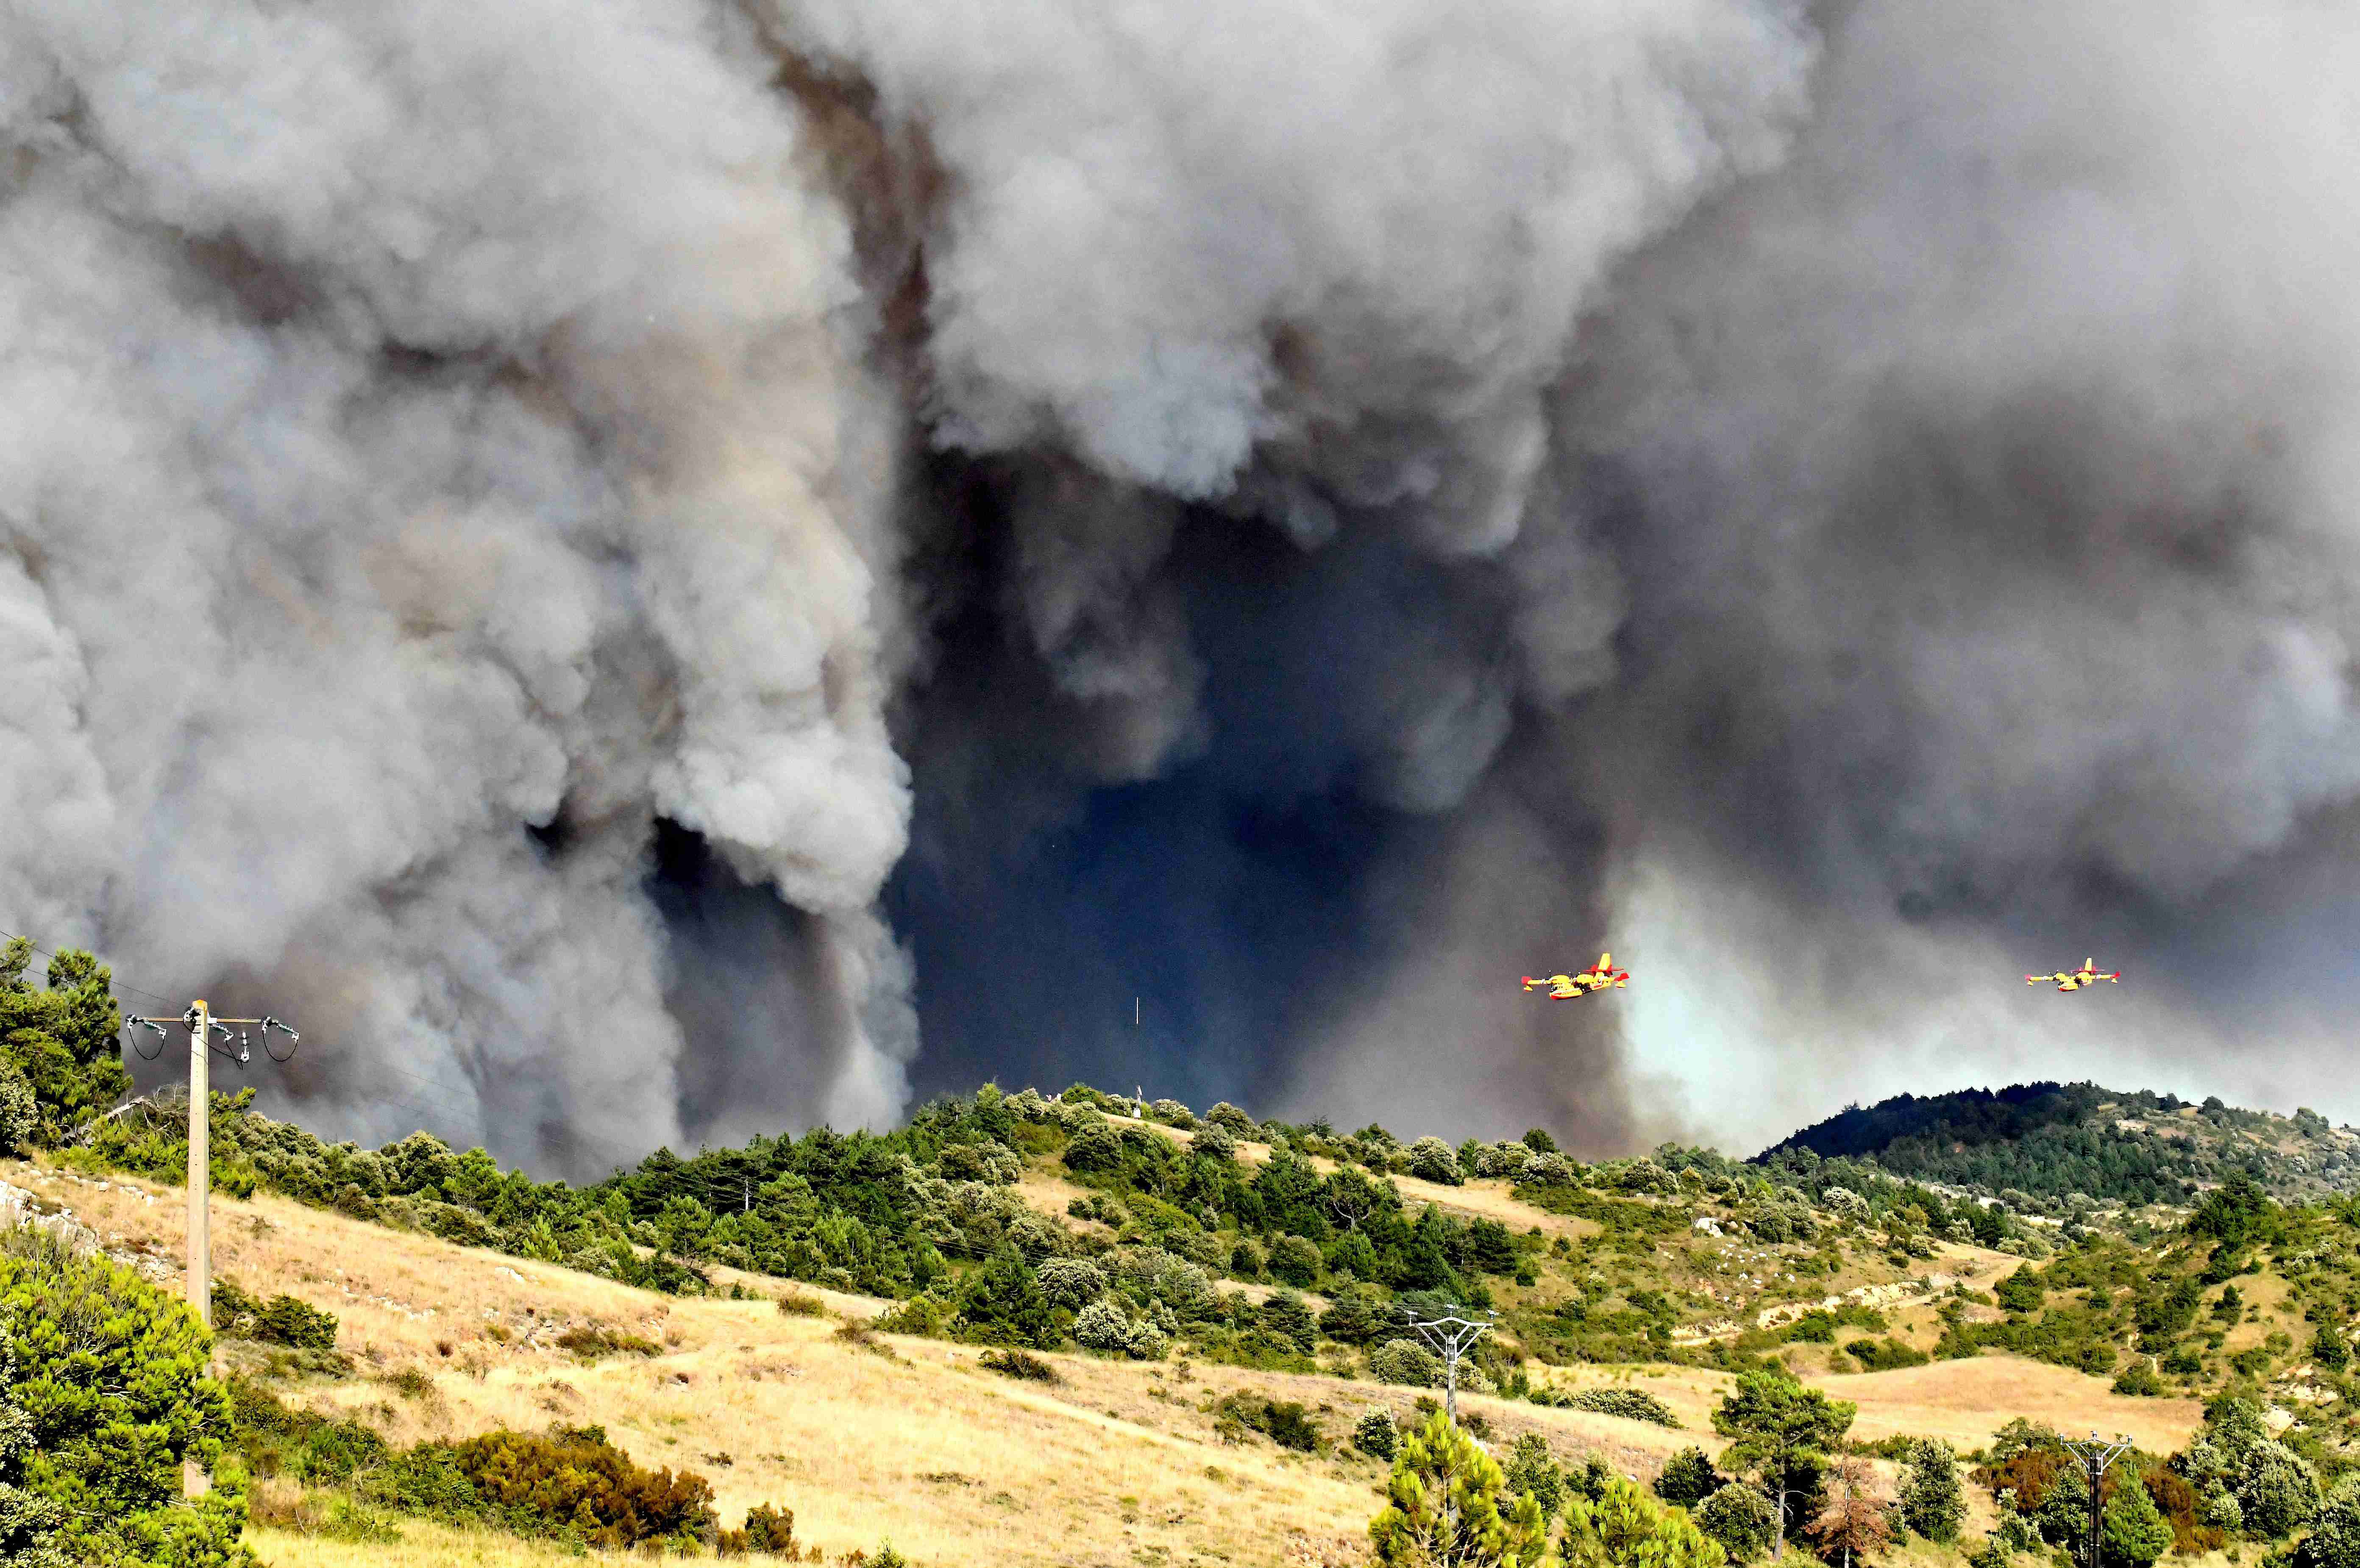 法国奥德省发生森林火灾 现场浓烟滚滚